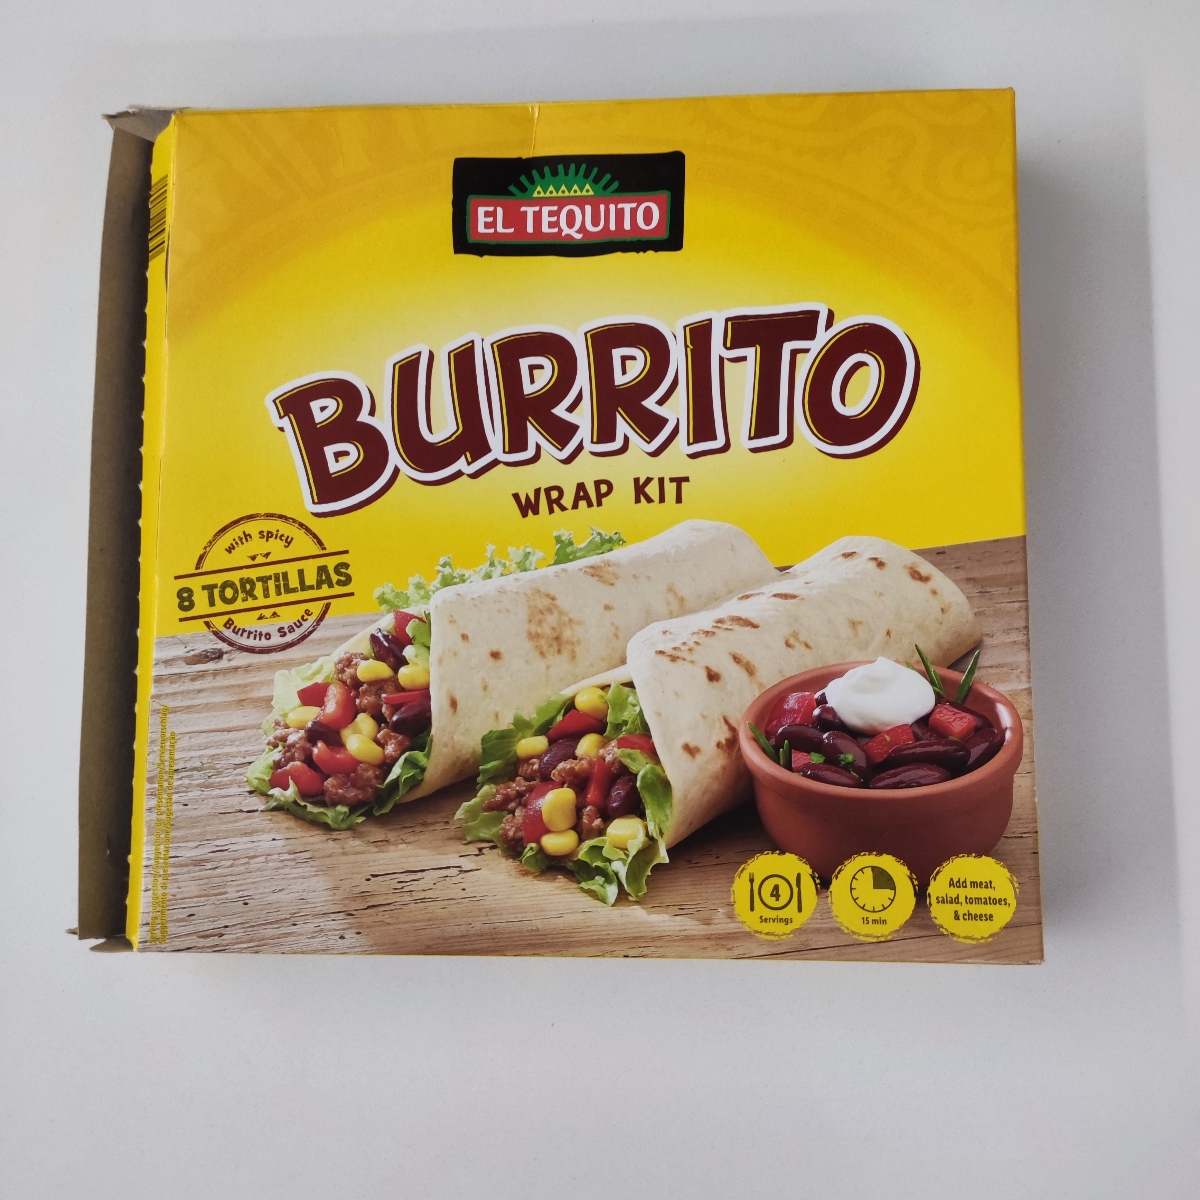 Review | El Burrito abillion Tequito